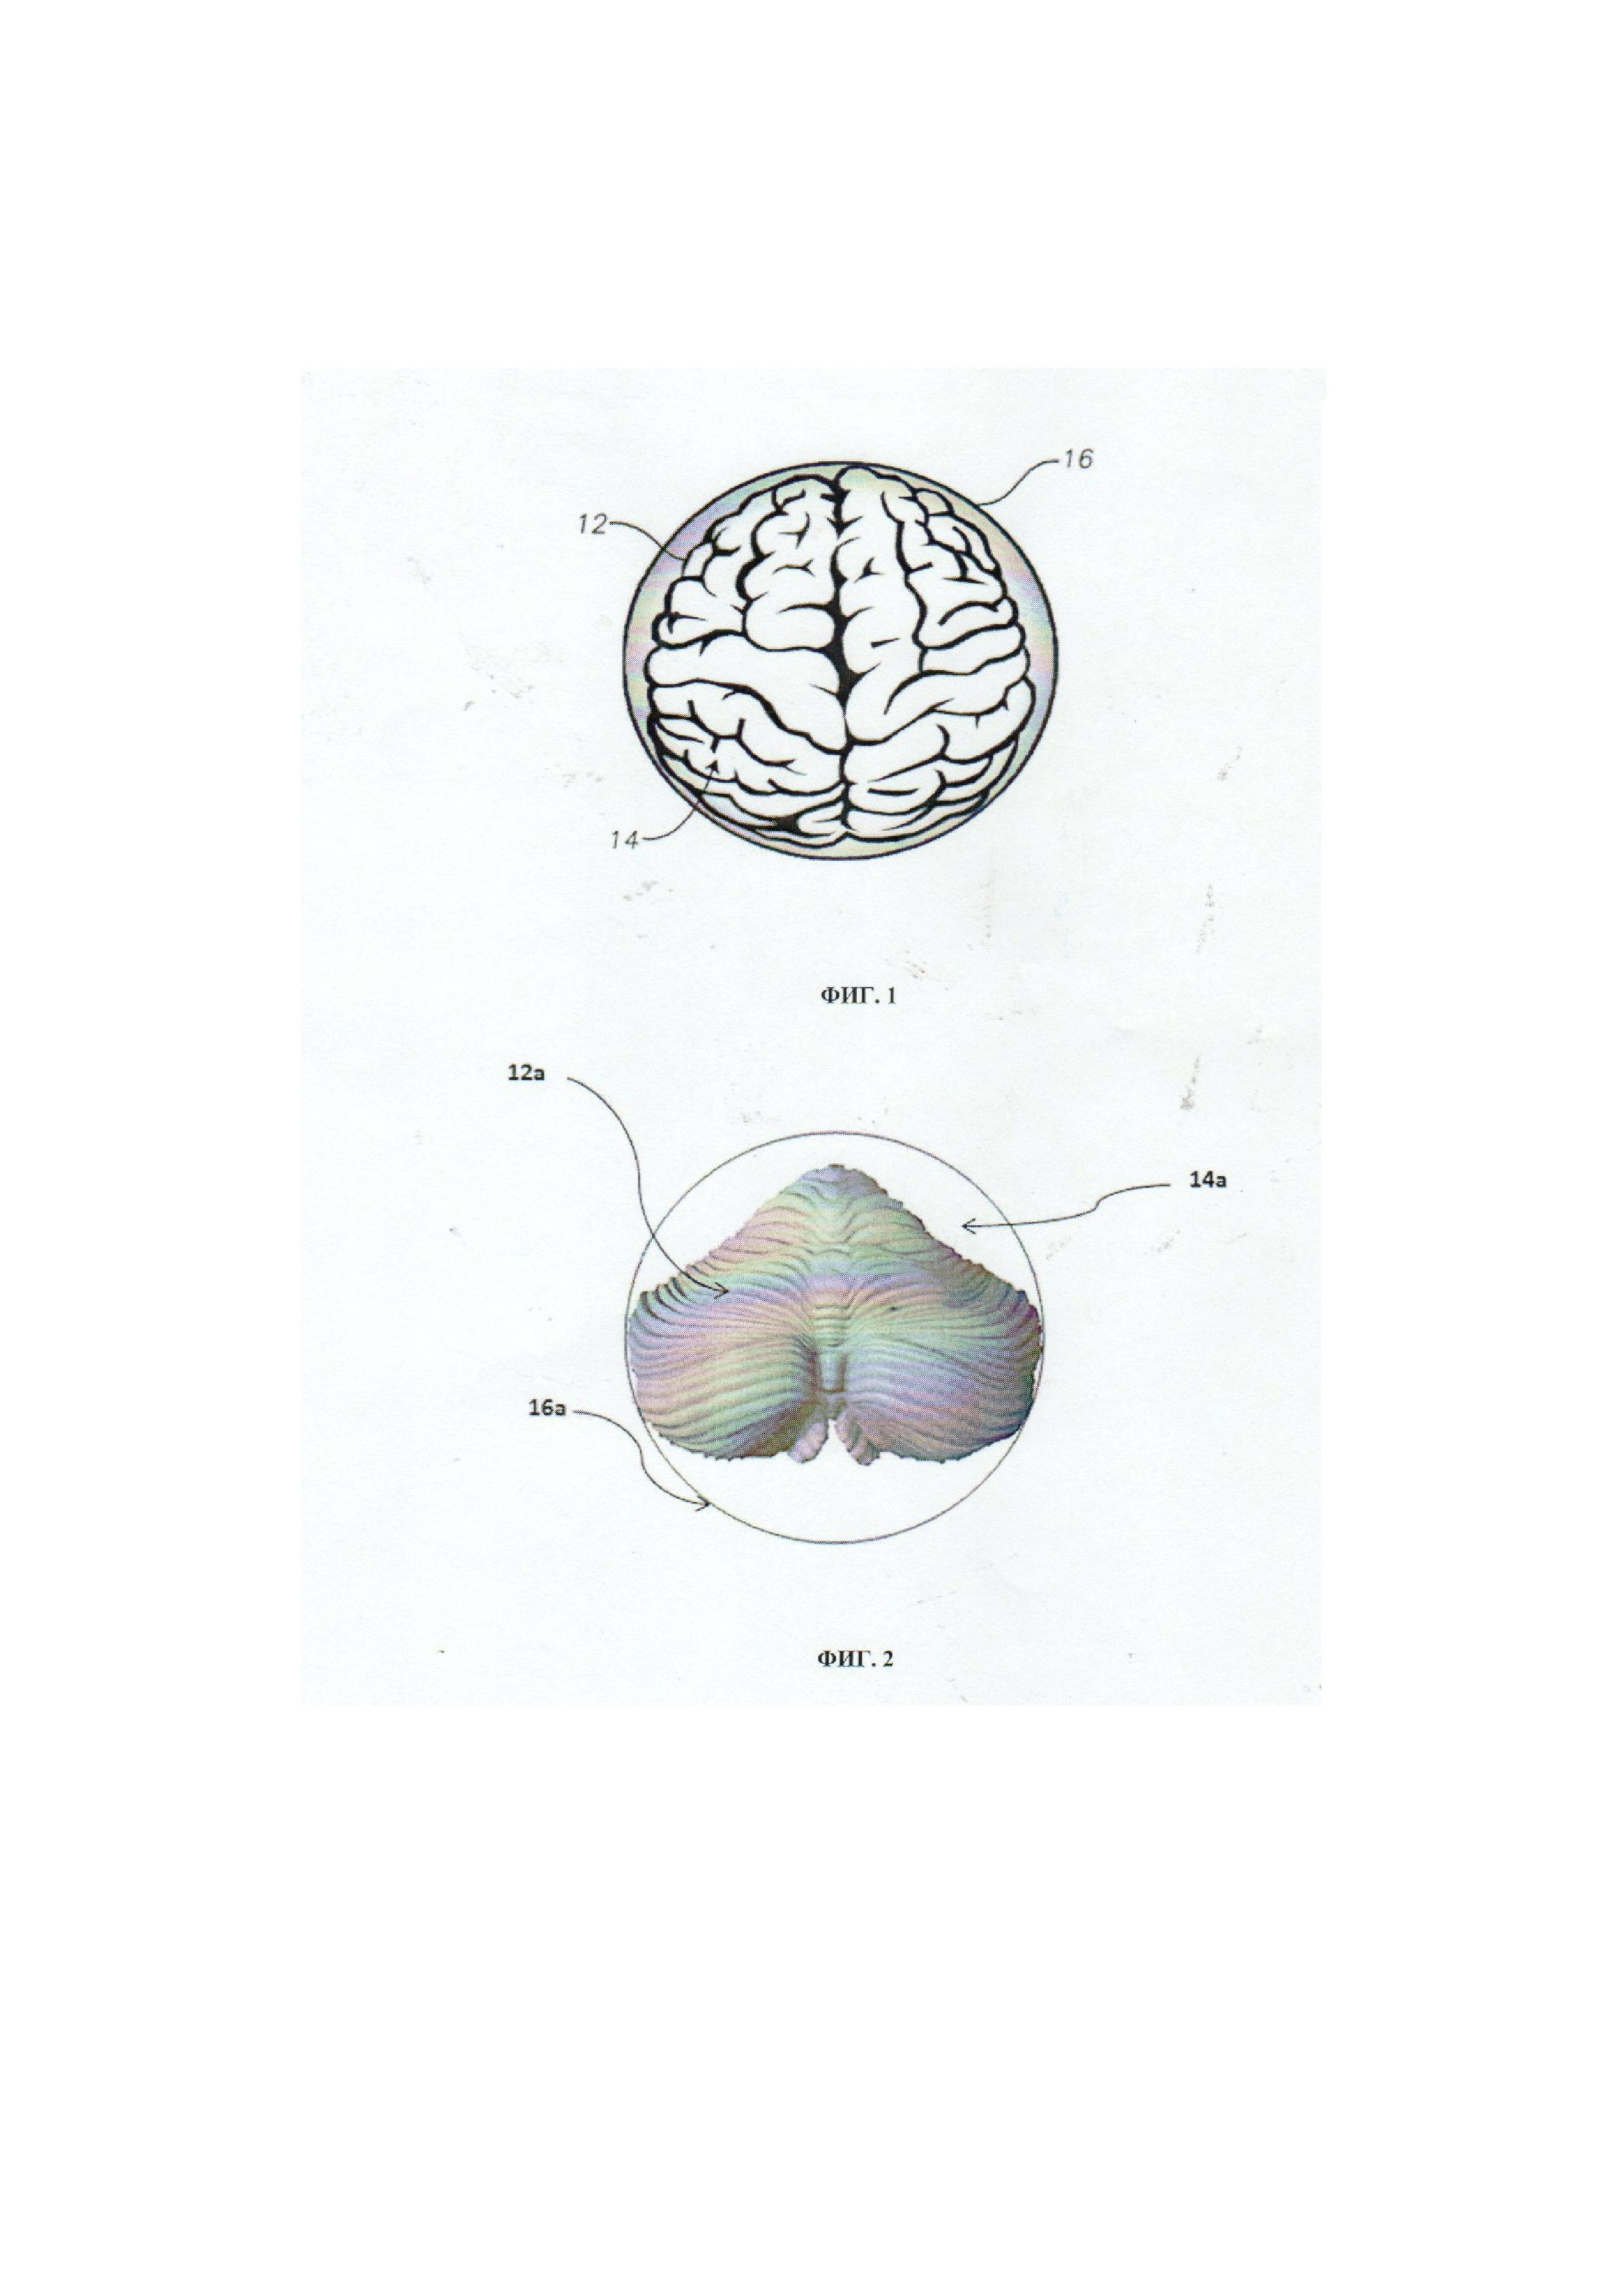 Способ макроэнцефалометрии полушарий большого мозга и мозжечка с учетом их аккомодации в закрытом окружающем человека пространстве